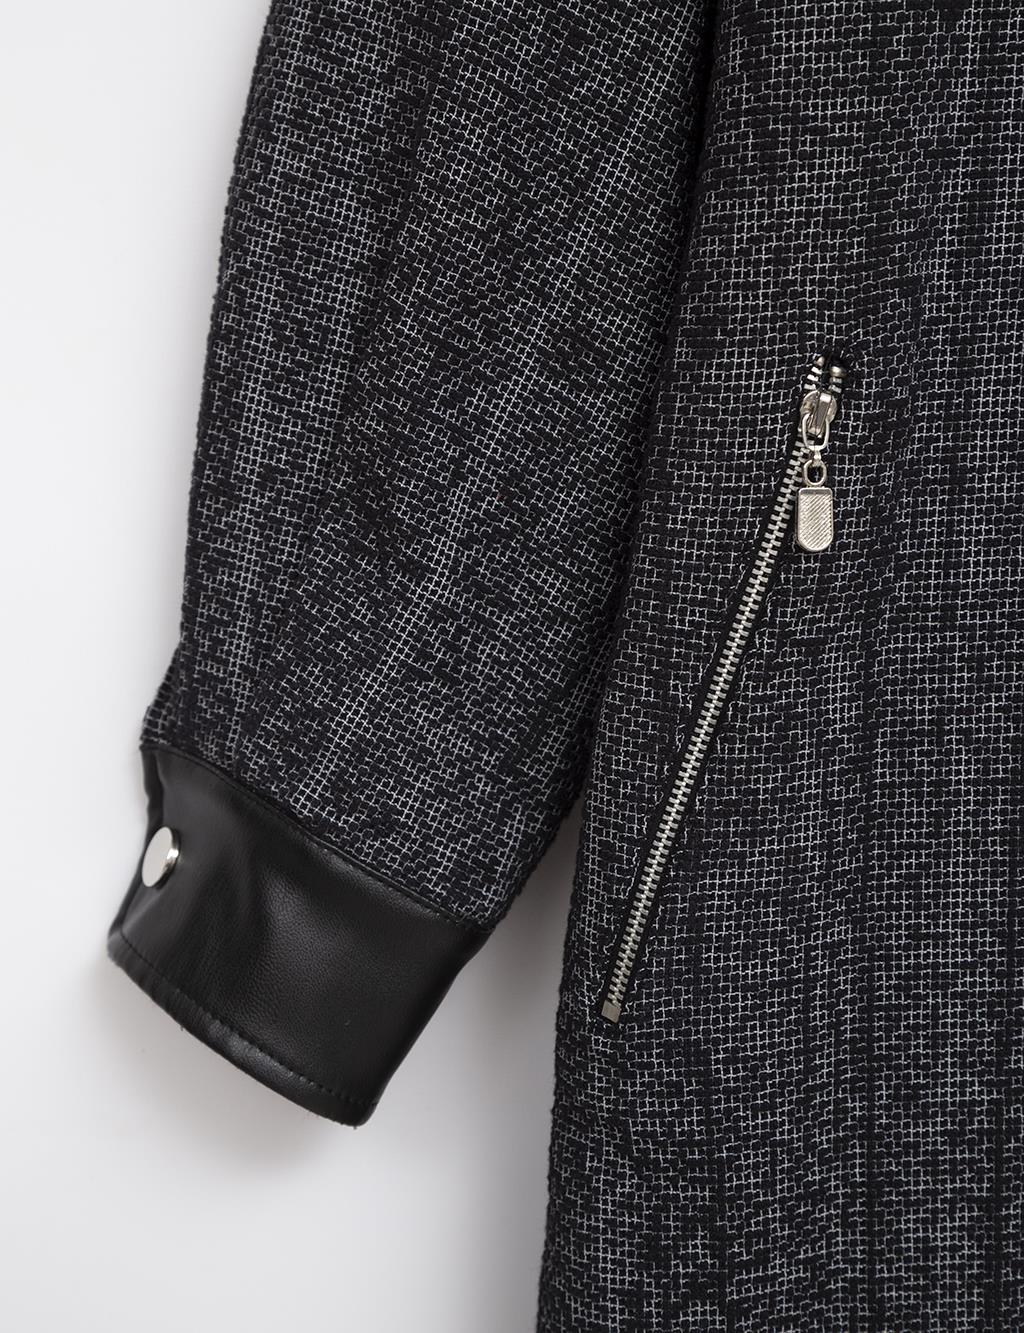 Zipper Closure Marbled Coat Black-Grey